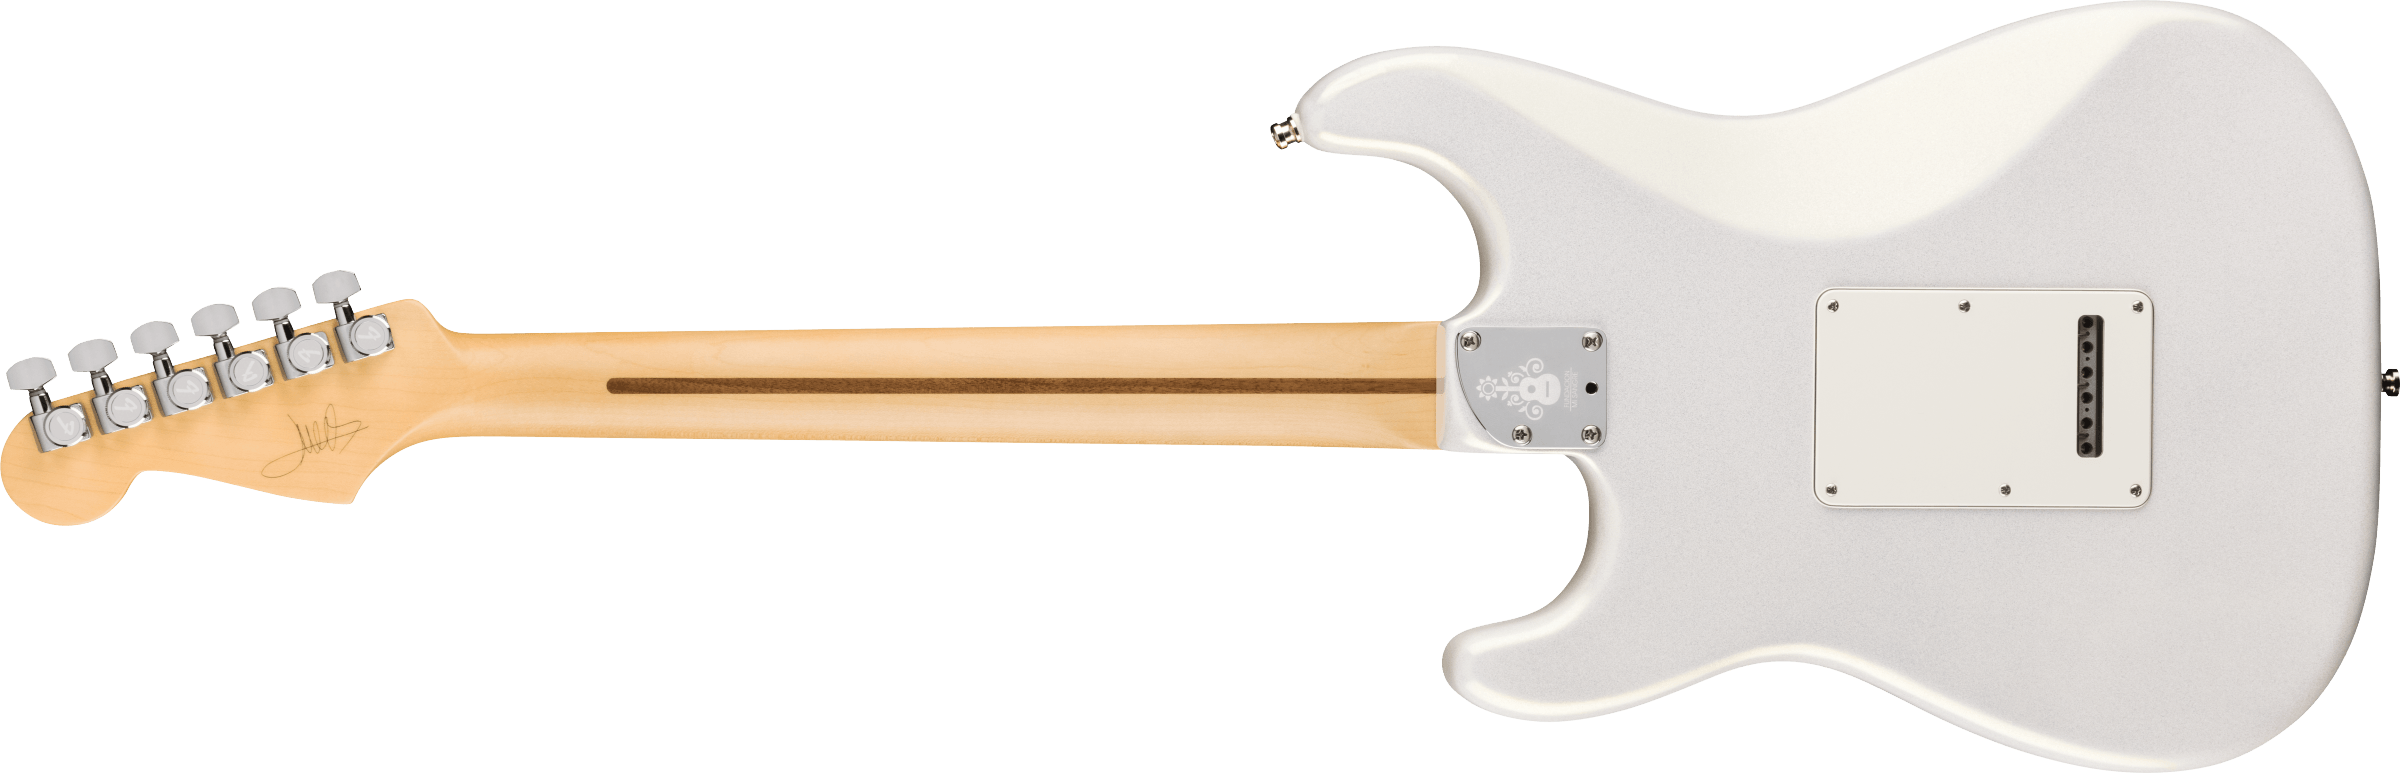 Fender Juanes Strat Trem Hss Mn - Luna White - Str shape electric guitar - Variation 1